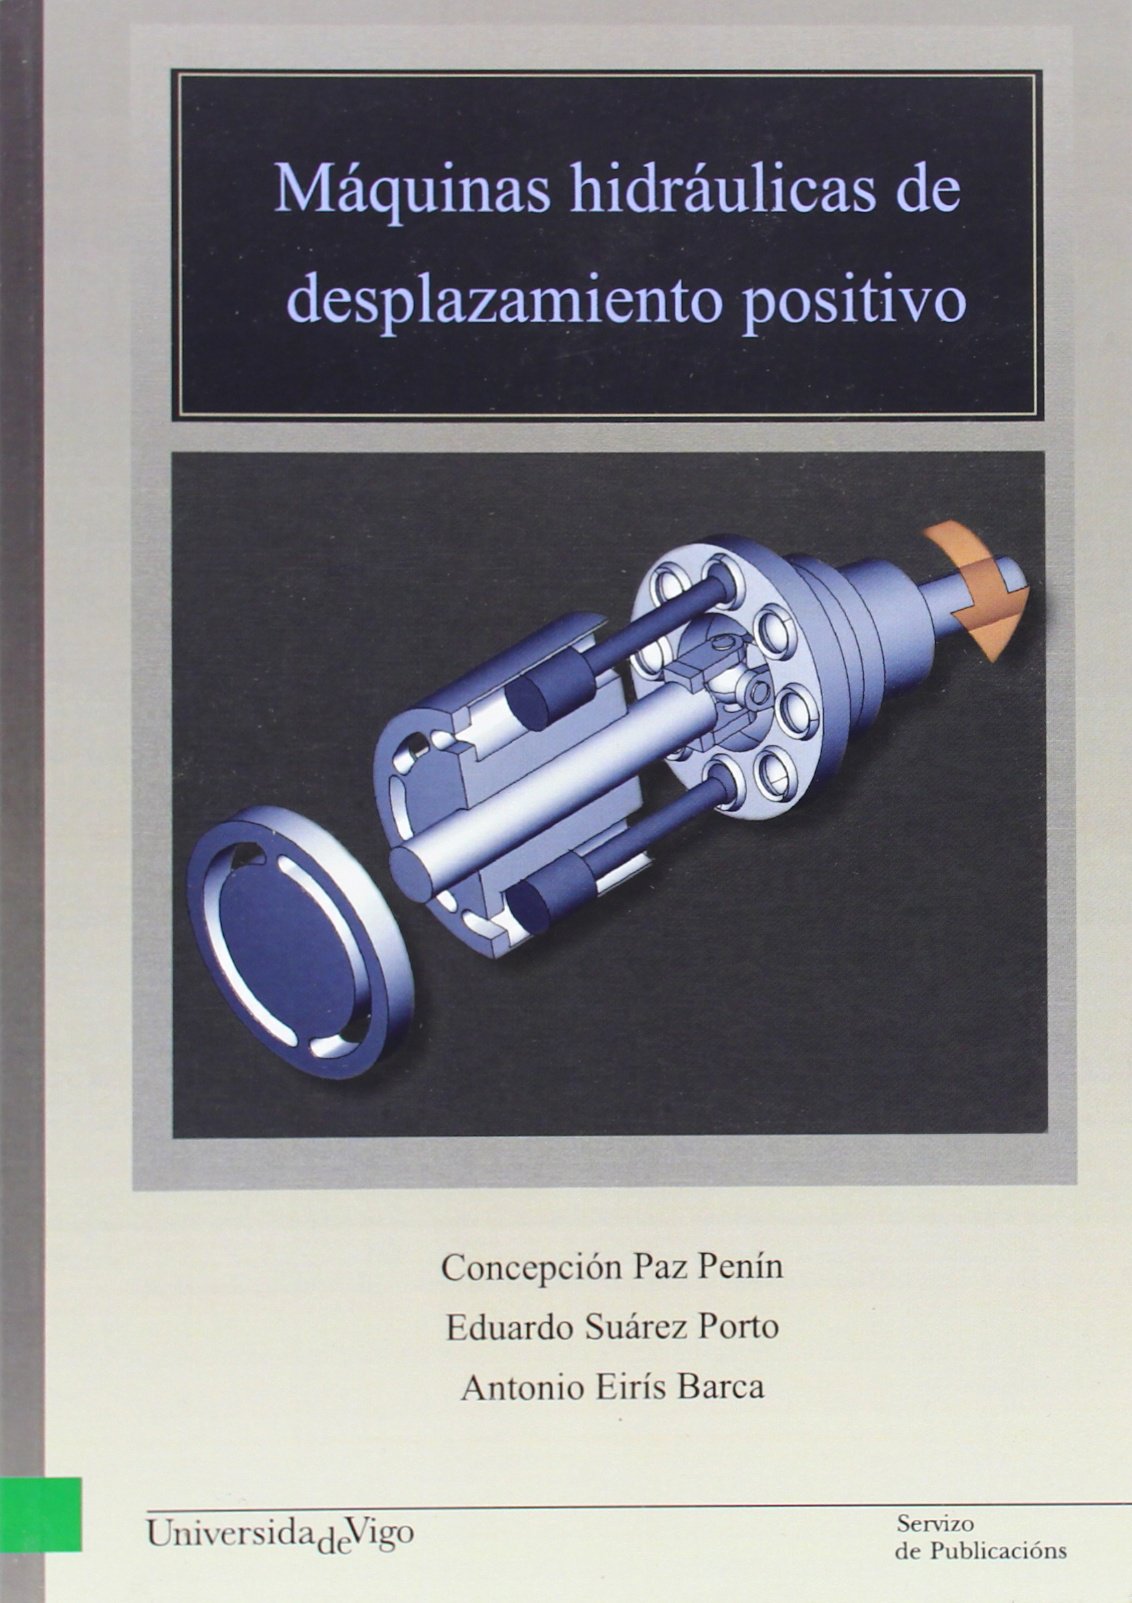 Imagen de portada del libro Máquinas hidráulicas de desplazamiento positivo